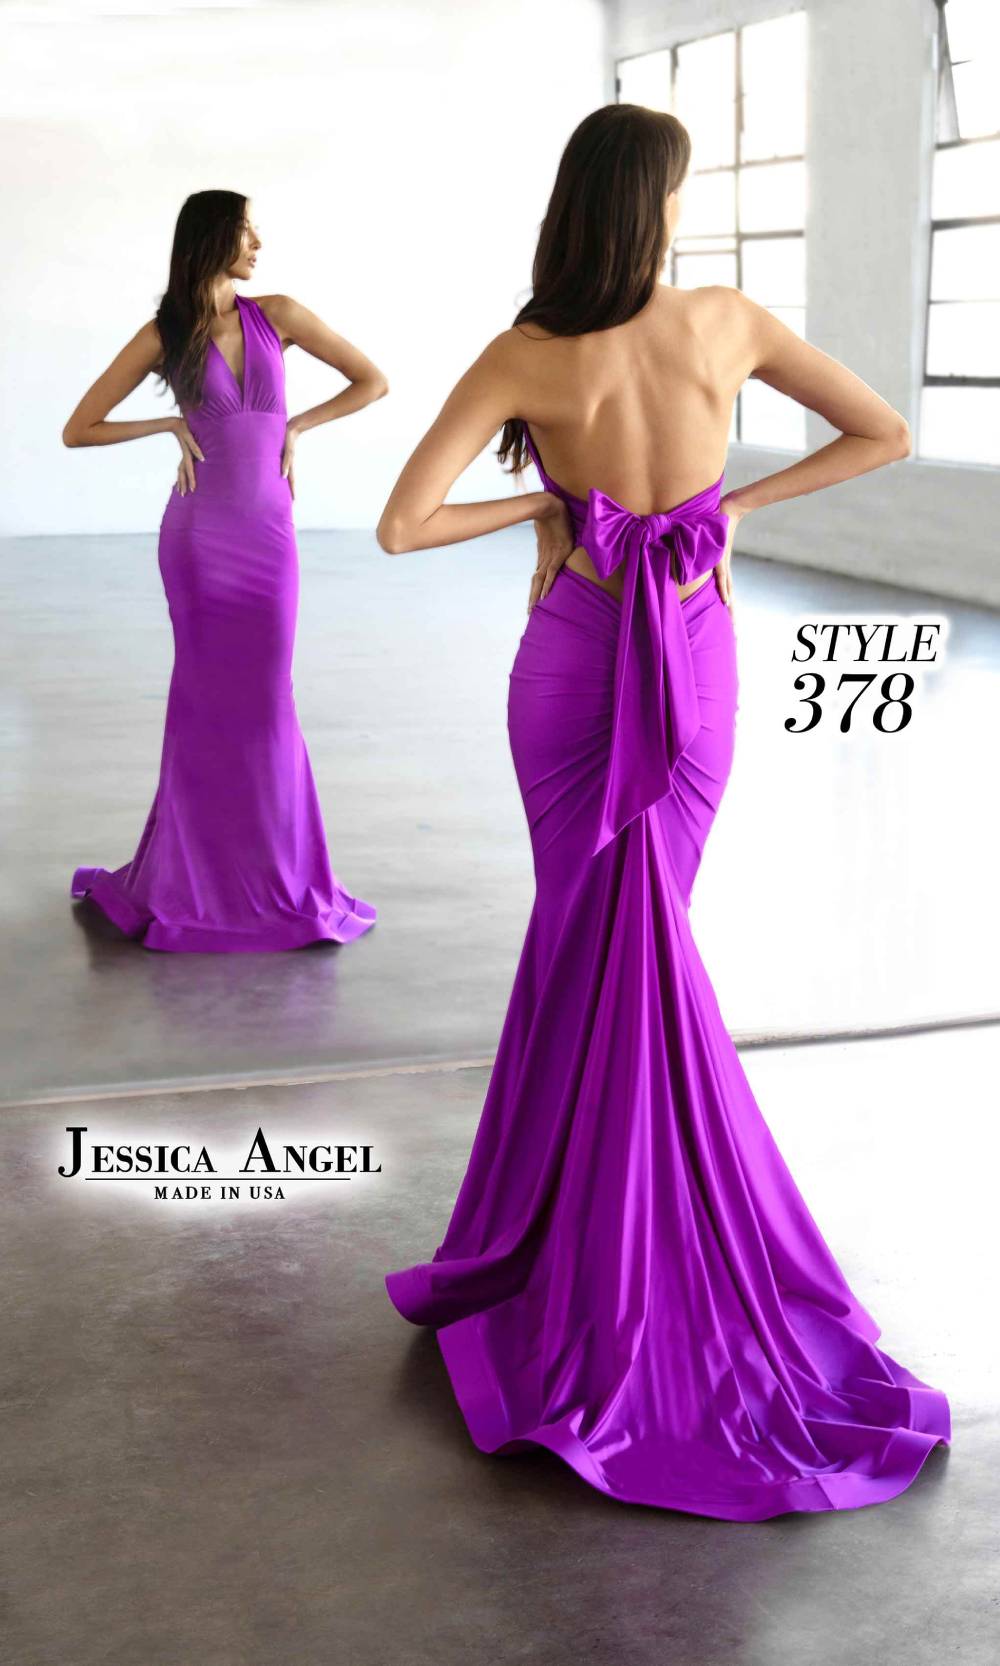 Jessica Angel 378 Purple